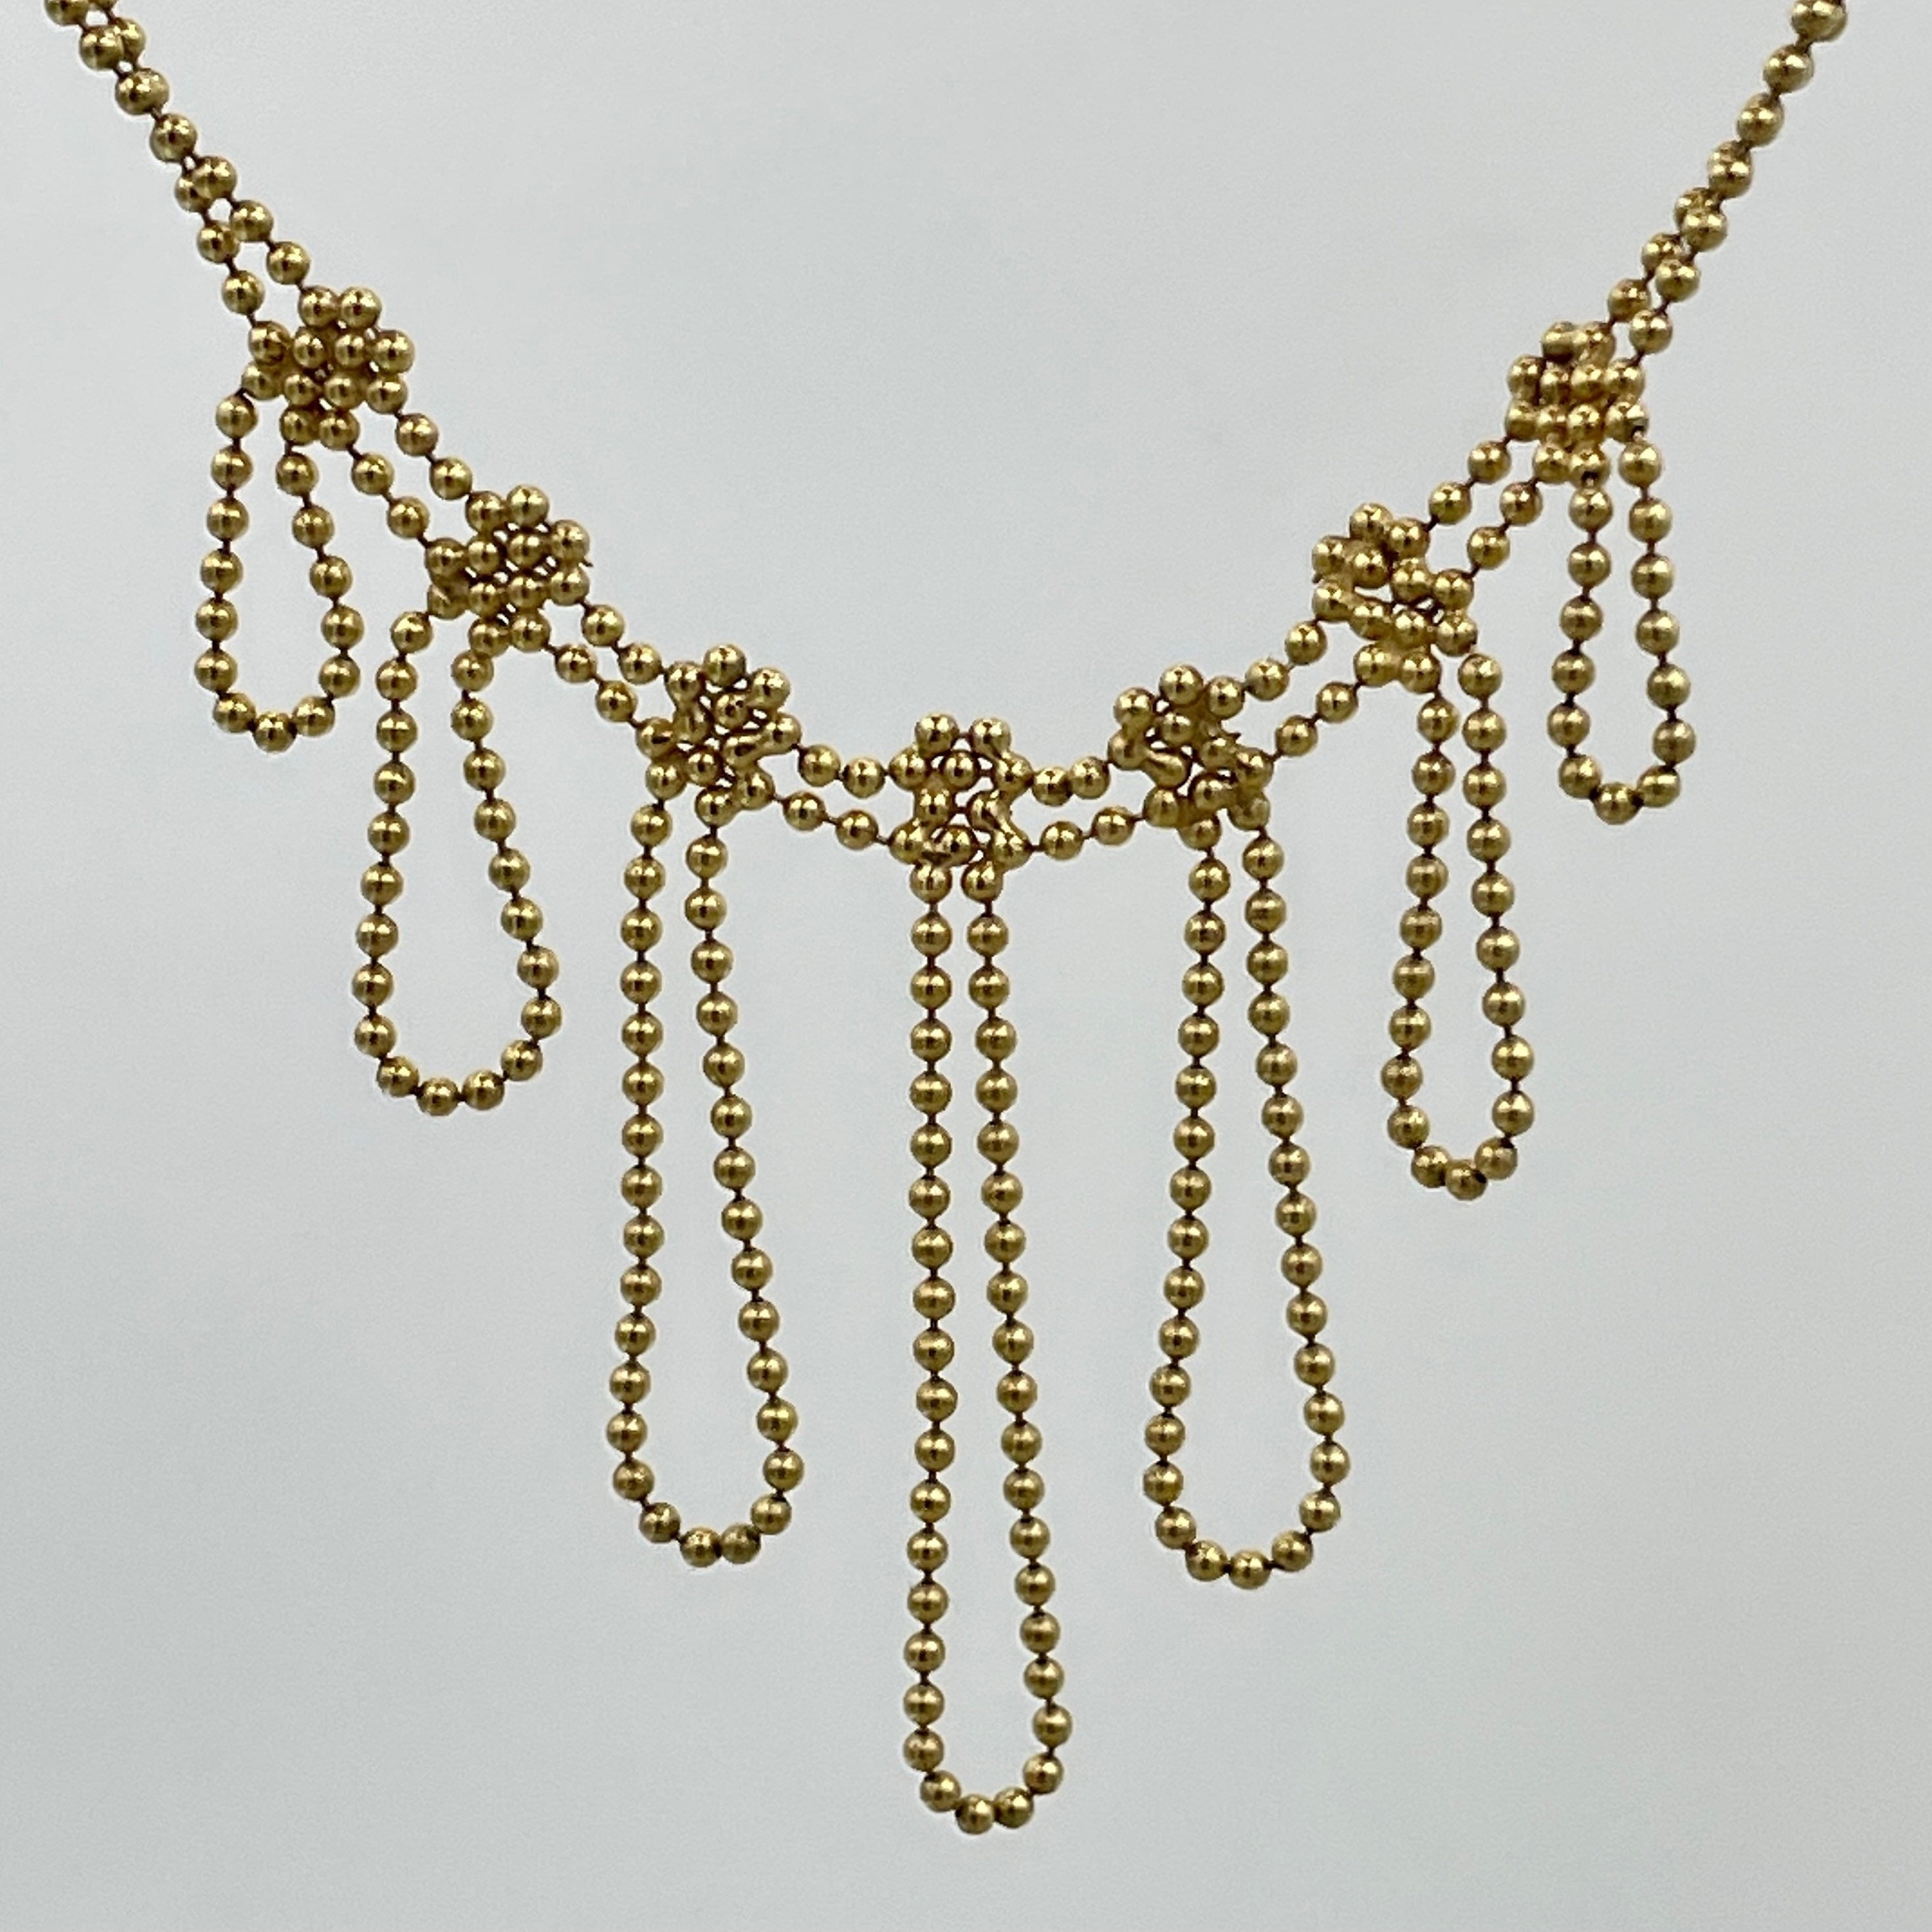 Vintage 9ct gold fringe necklace